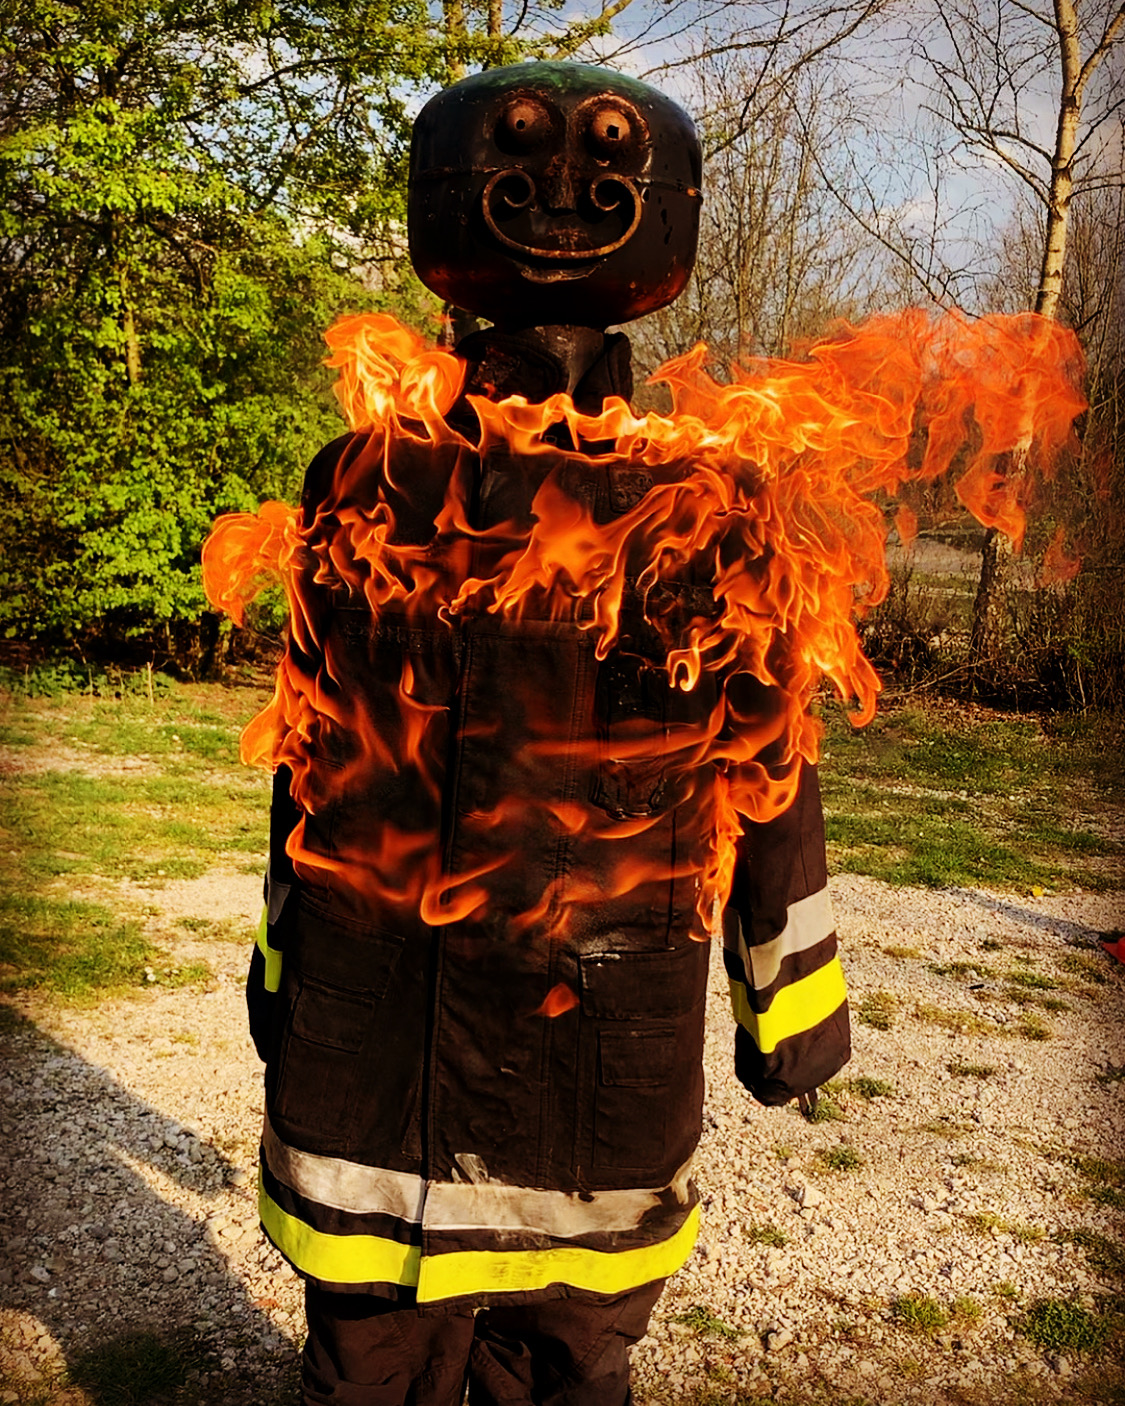 Ablöschen einer brennenden Puppe